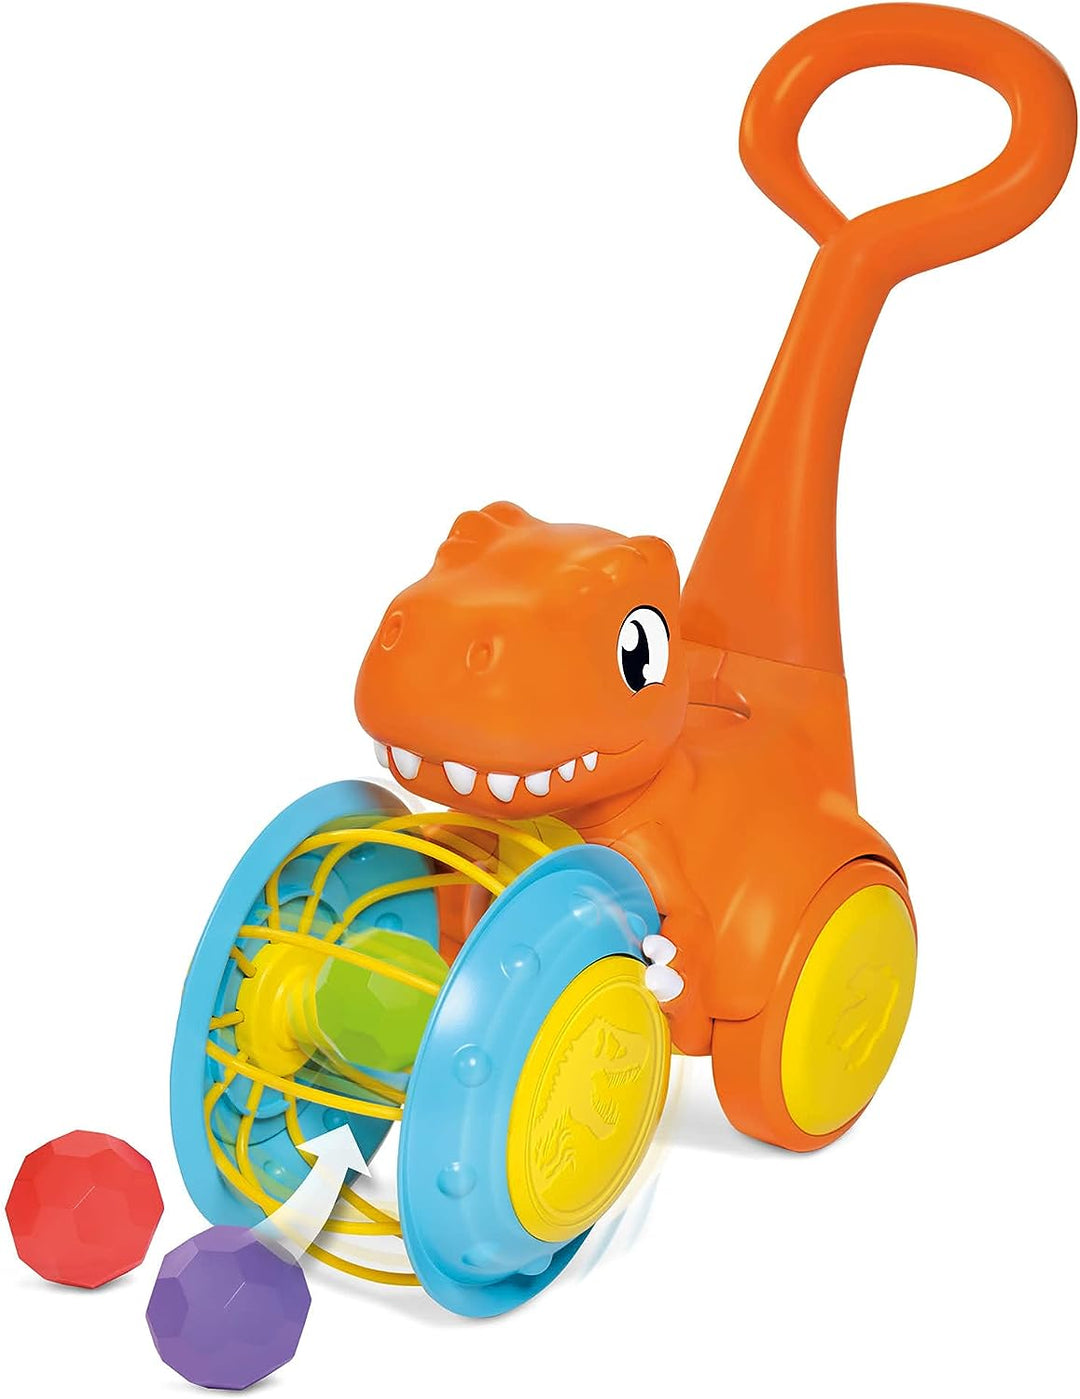 Toomies E73254 Tomy Pic &amp; Push T. Rex, Kinder, Jurassic World, pädagogisches Push &amp; Go-Fahrzeug, buntes Dinosaurierspielzeug für Jungen und Mädchen ab 12 Monaten, mehrfarbig